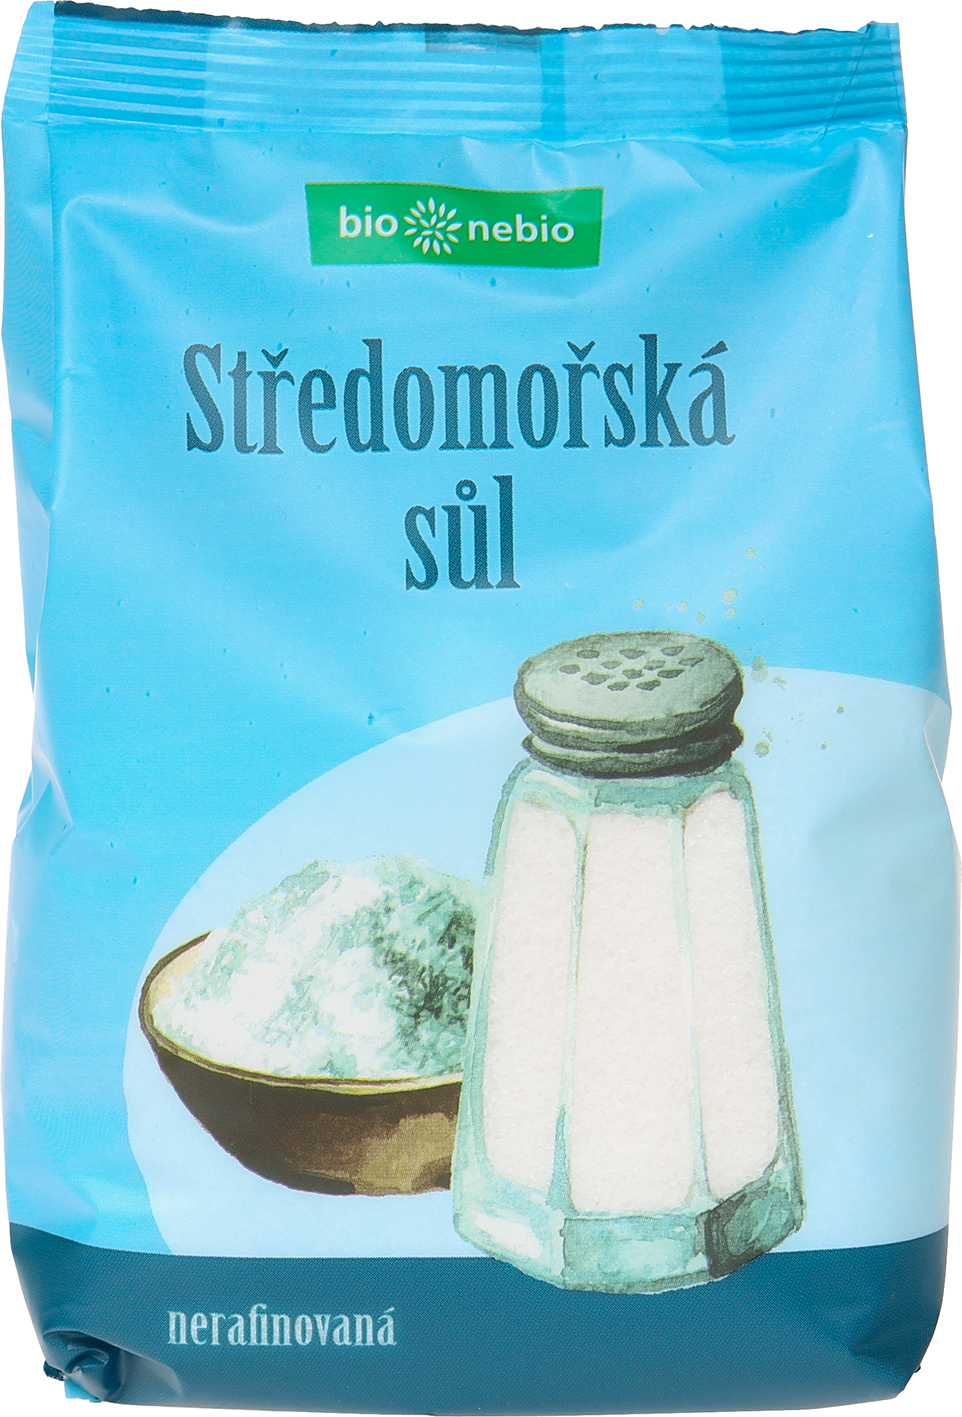 Středomořská sůl nerafinovaná bio*nebio 500 g